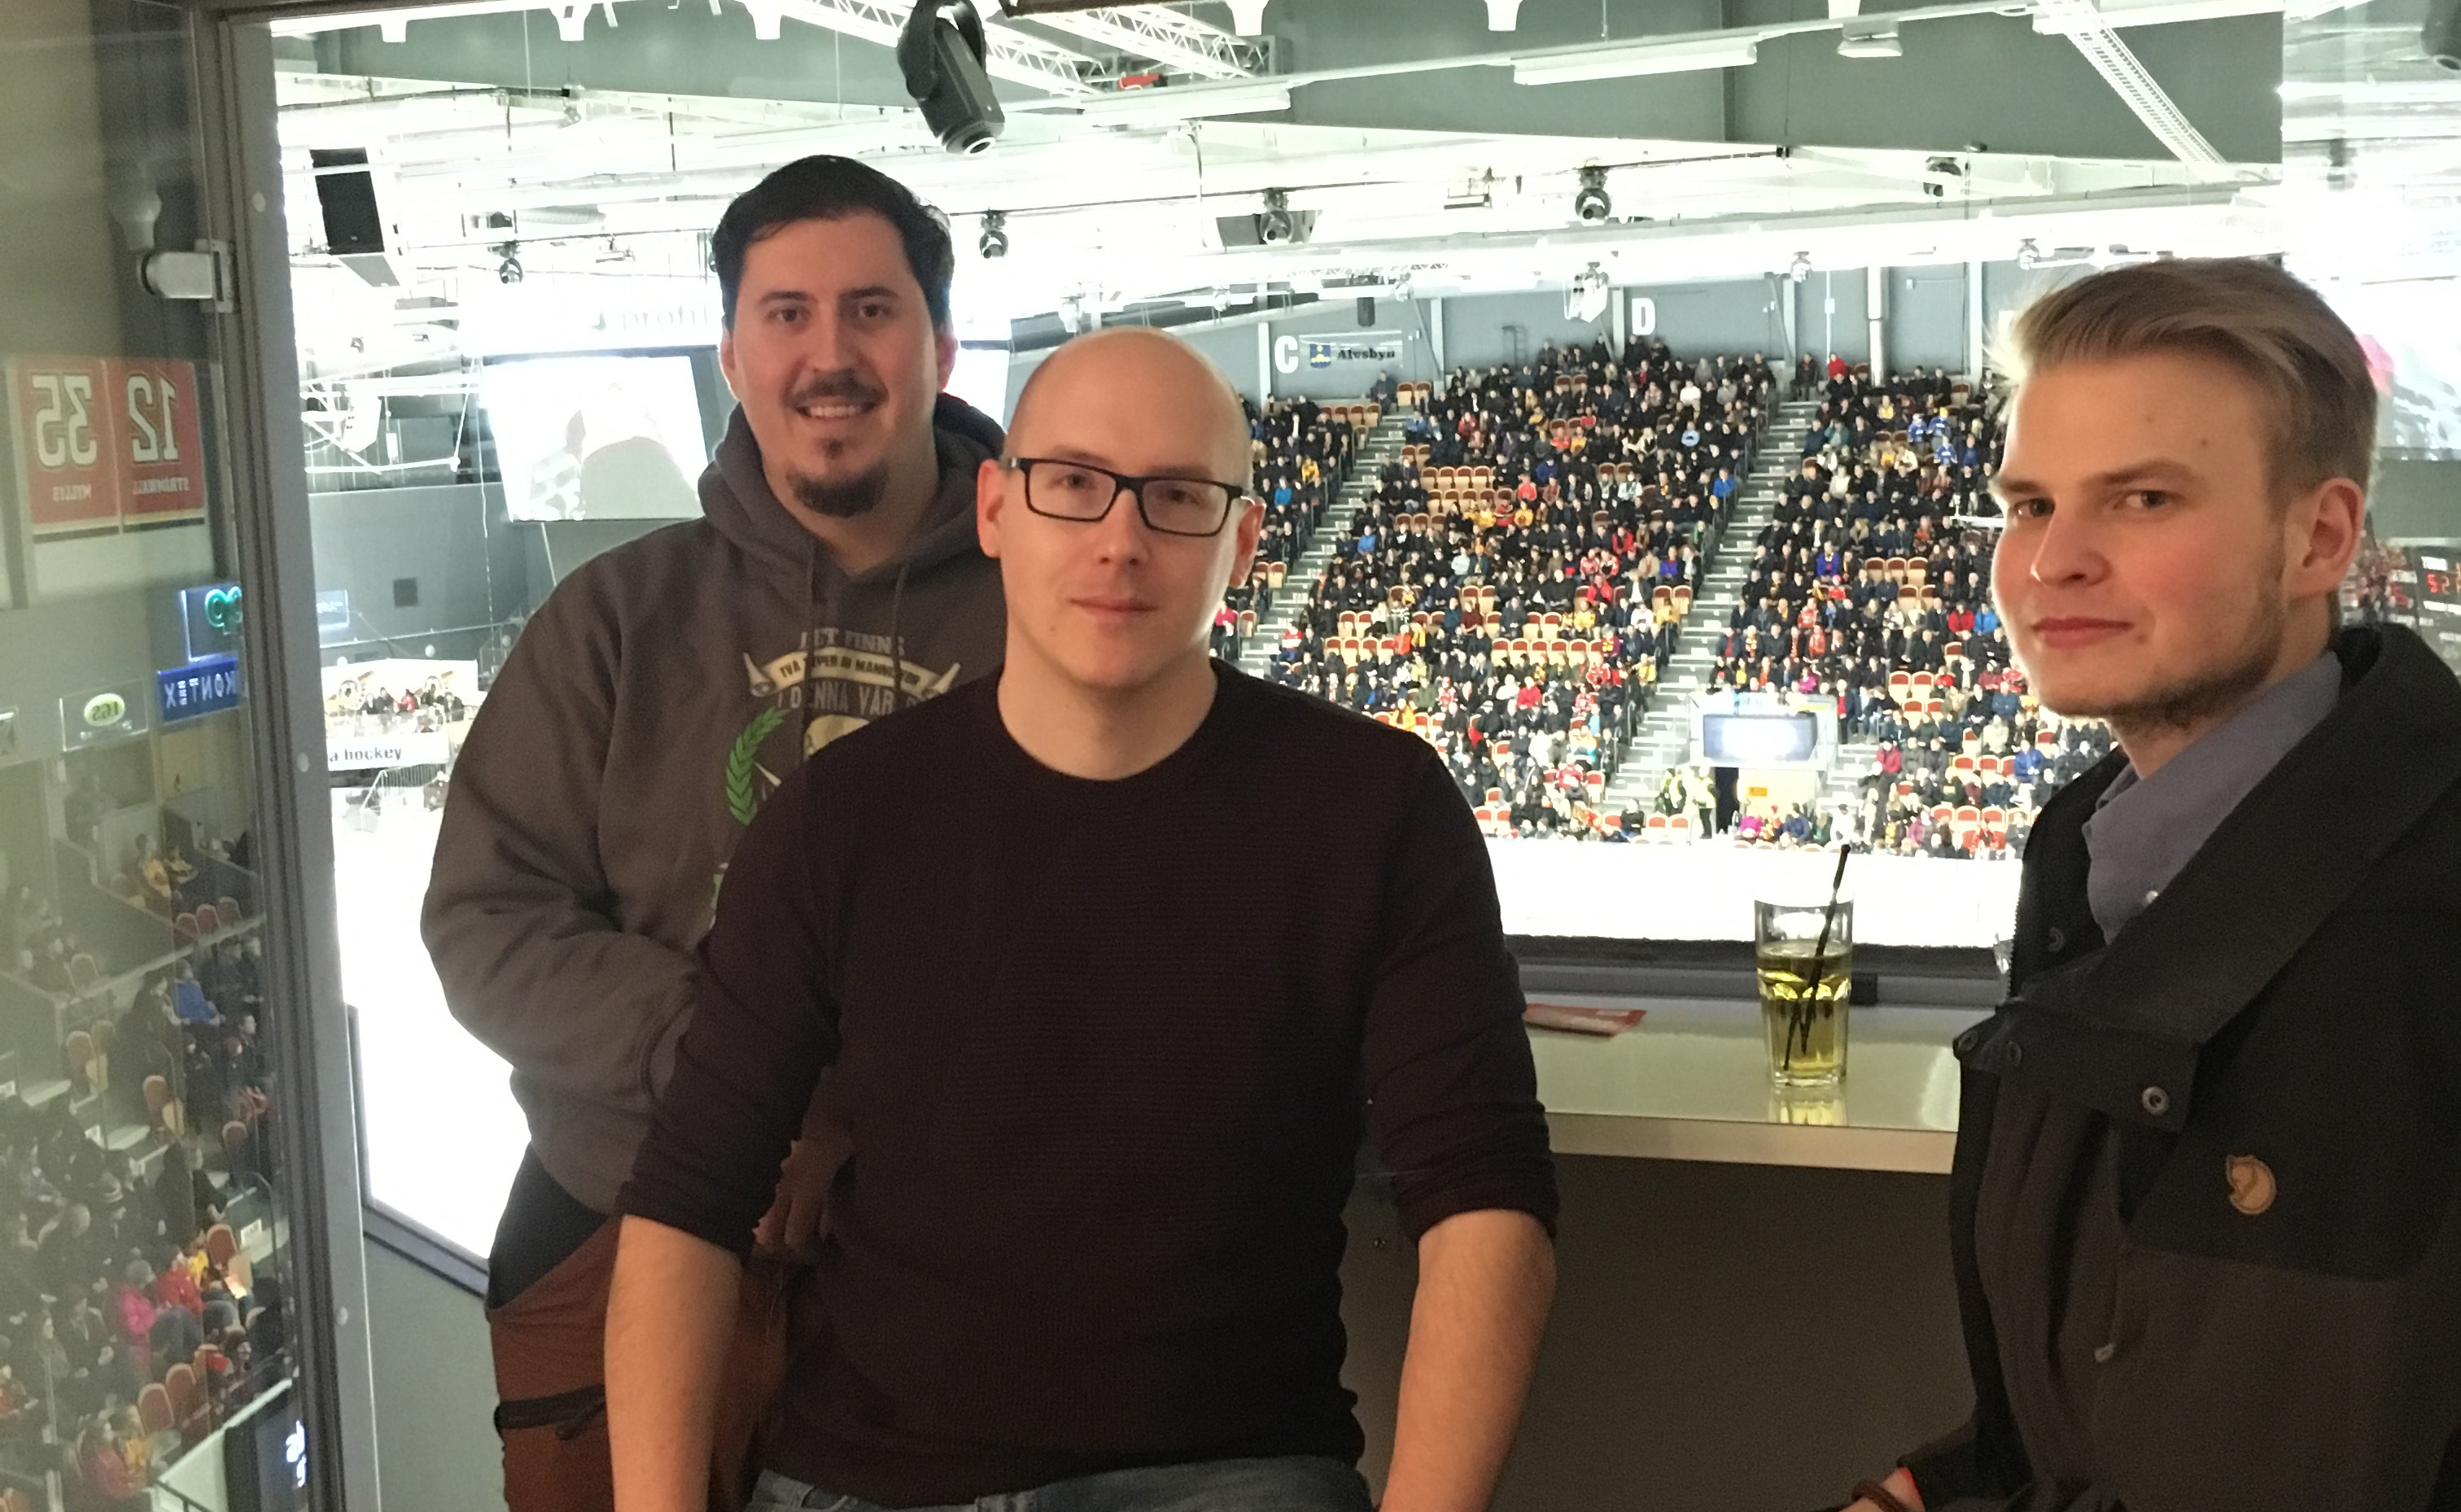 Bilden föreställer tre män som står i en utsiktsloge i en hockeyrink. I bakgrunden syns läktare och publik.